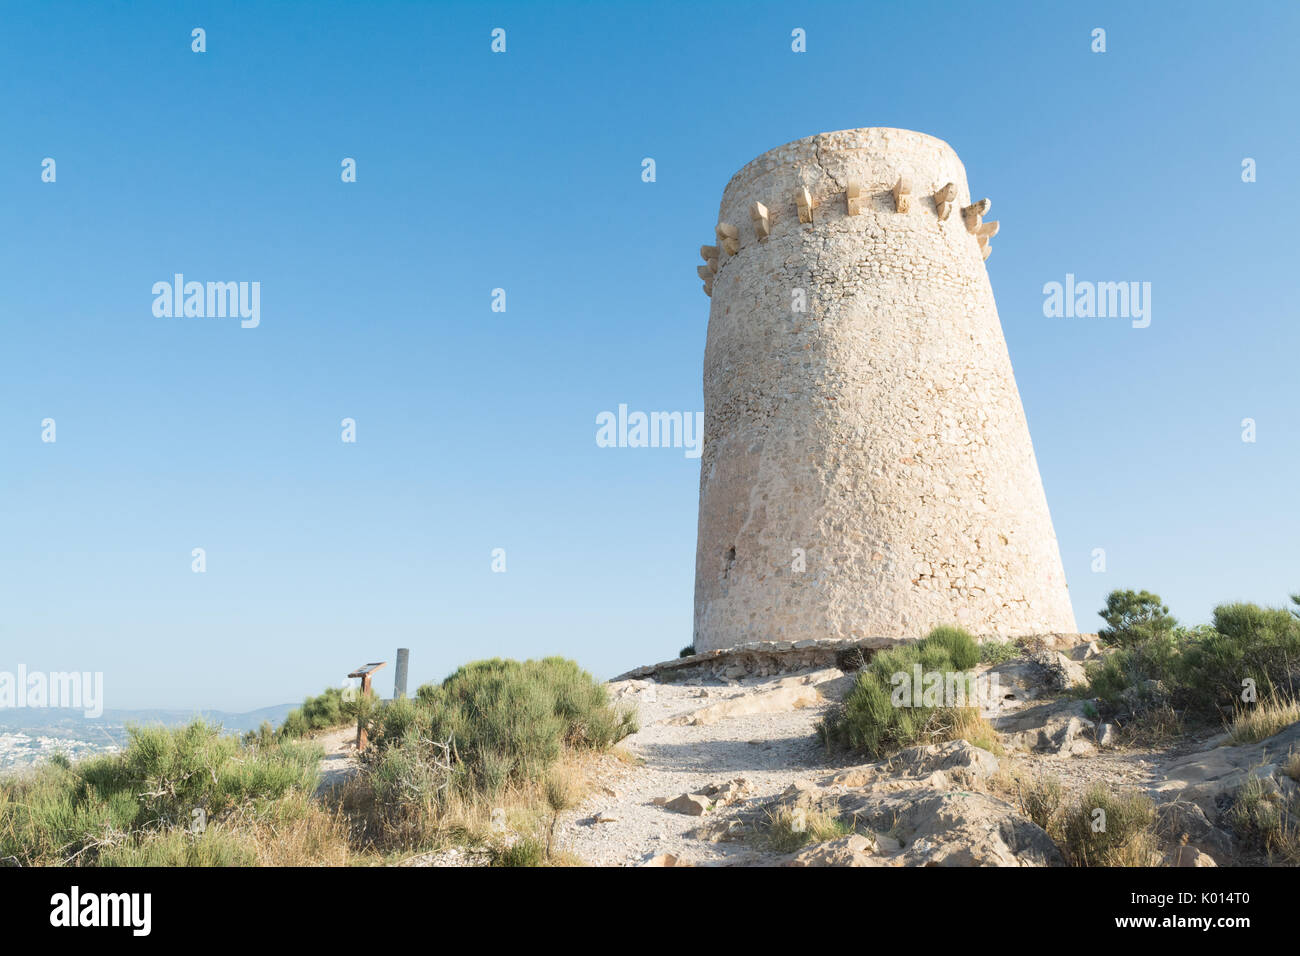 El Portet Moraira torre di avvistamento - torre Vigia Cap d'Or, Moraira - conosciuto localmente come il Pepperpot, Alicante, Costa Blanca, Spagna Foto Stock